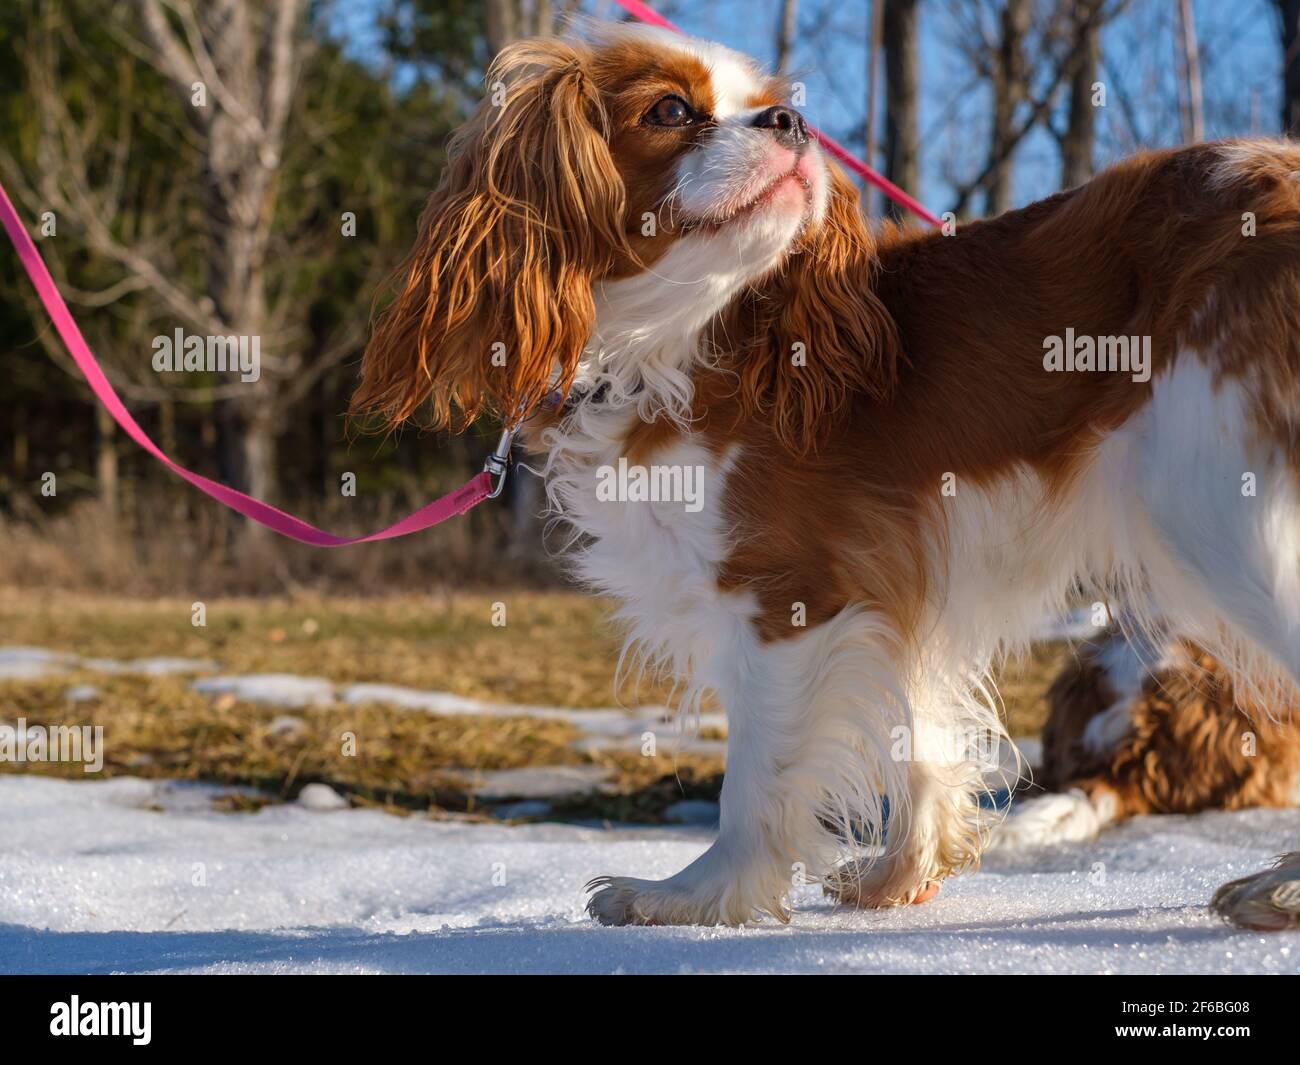 Un Cavalier re Charles Spaniel si erge all'esterno su un pezzetto di neve sotto la luce del sole. Il giovane cane è su un guinzaglio rosa e ha colorazione Blenheim. Foto Stock